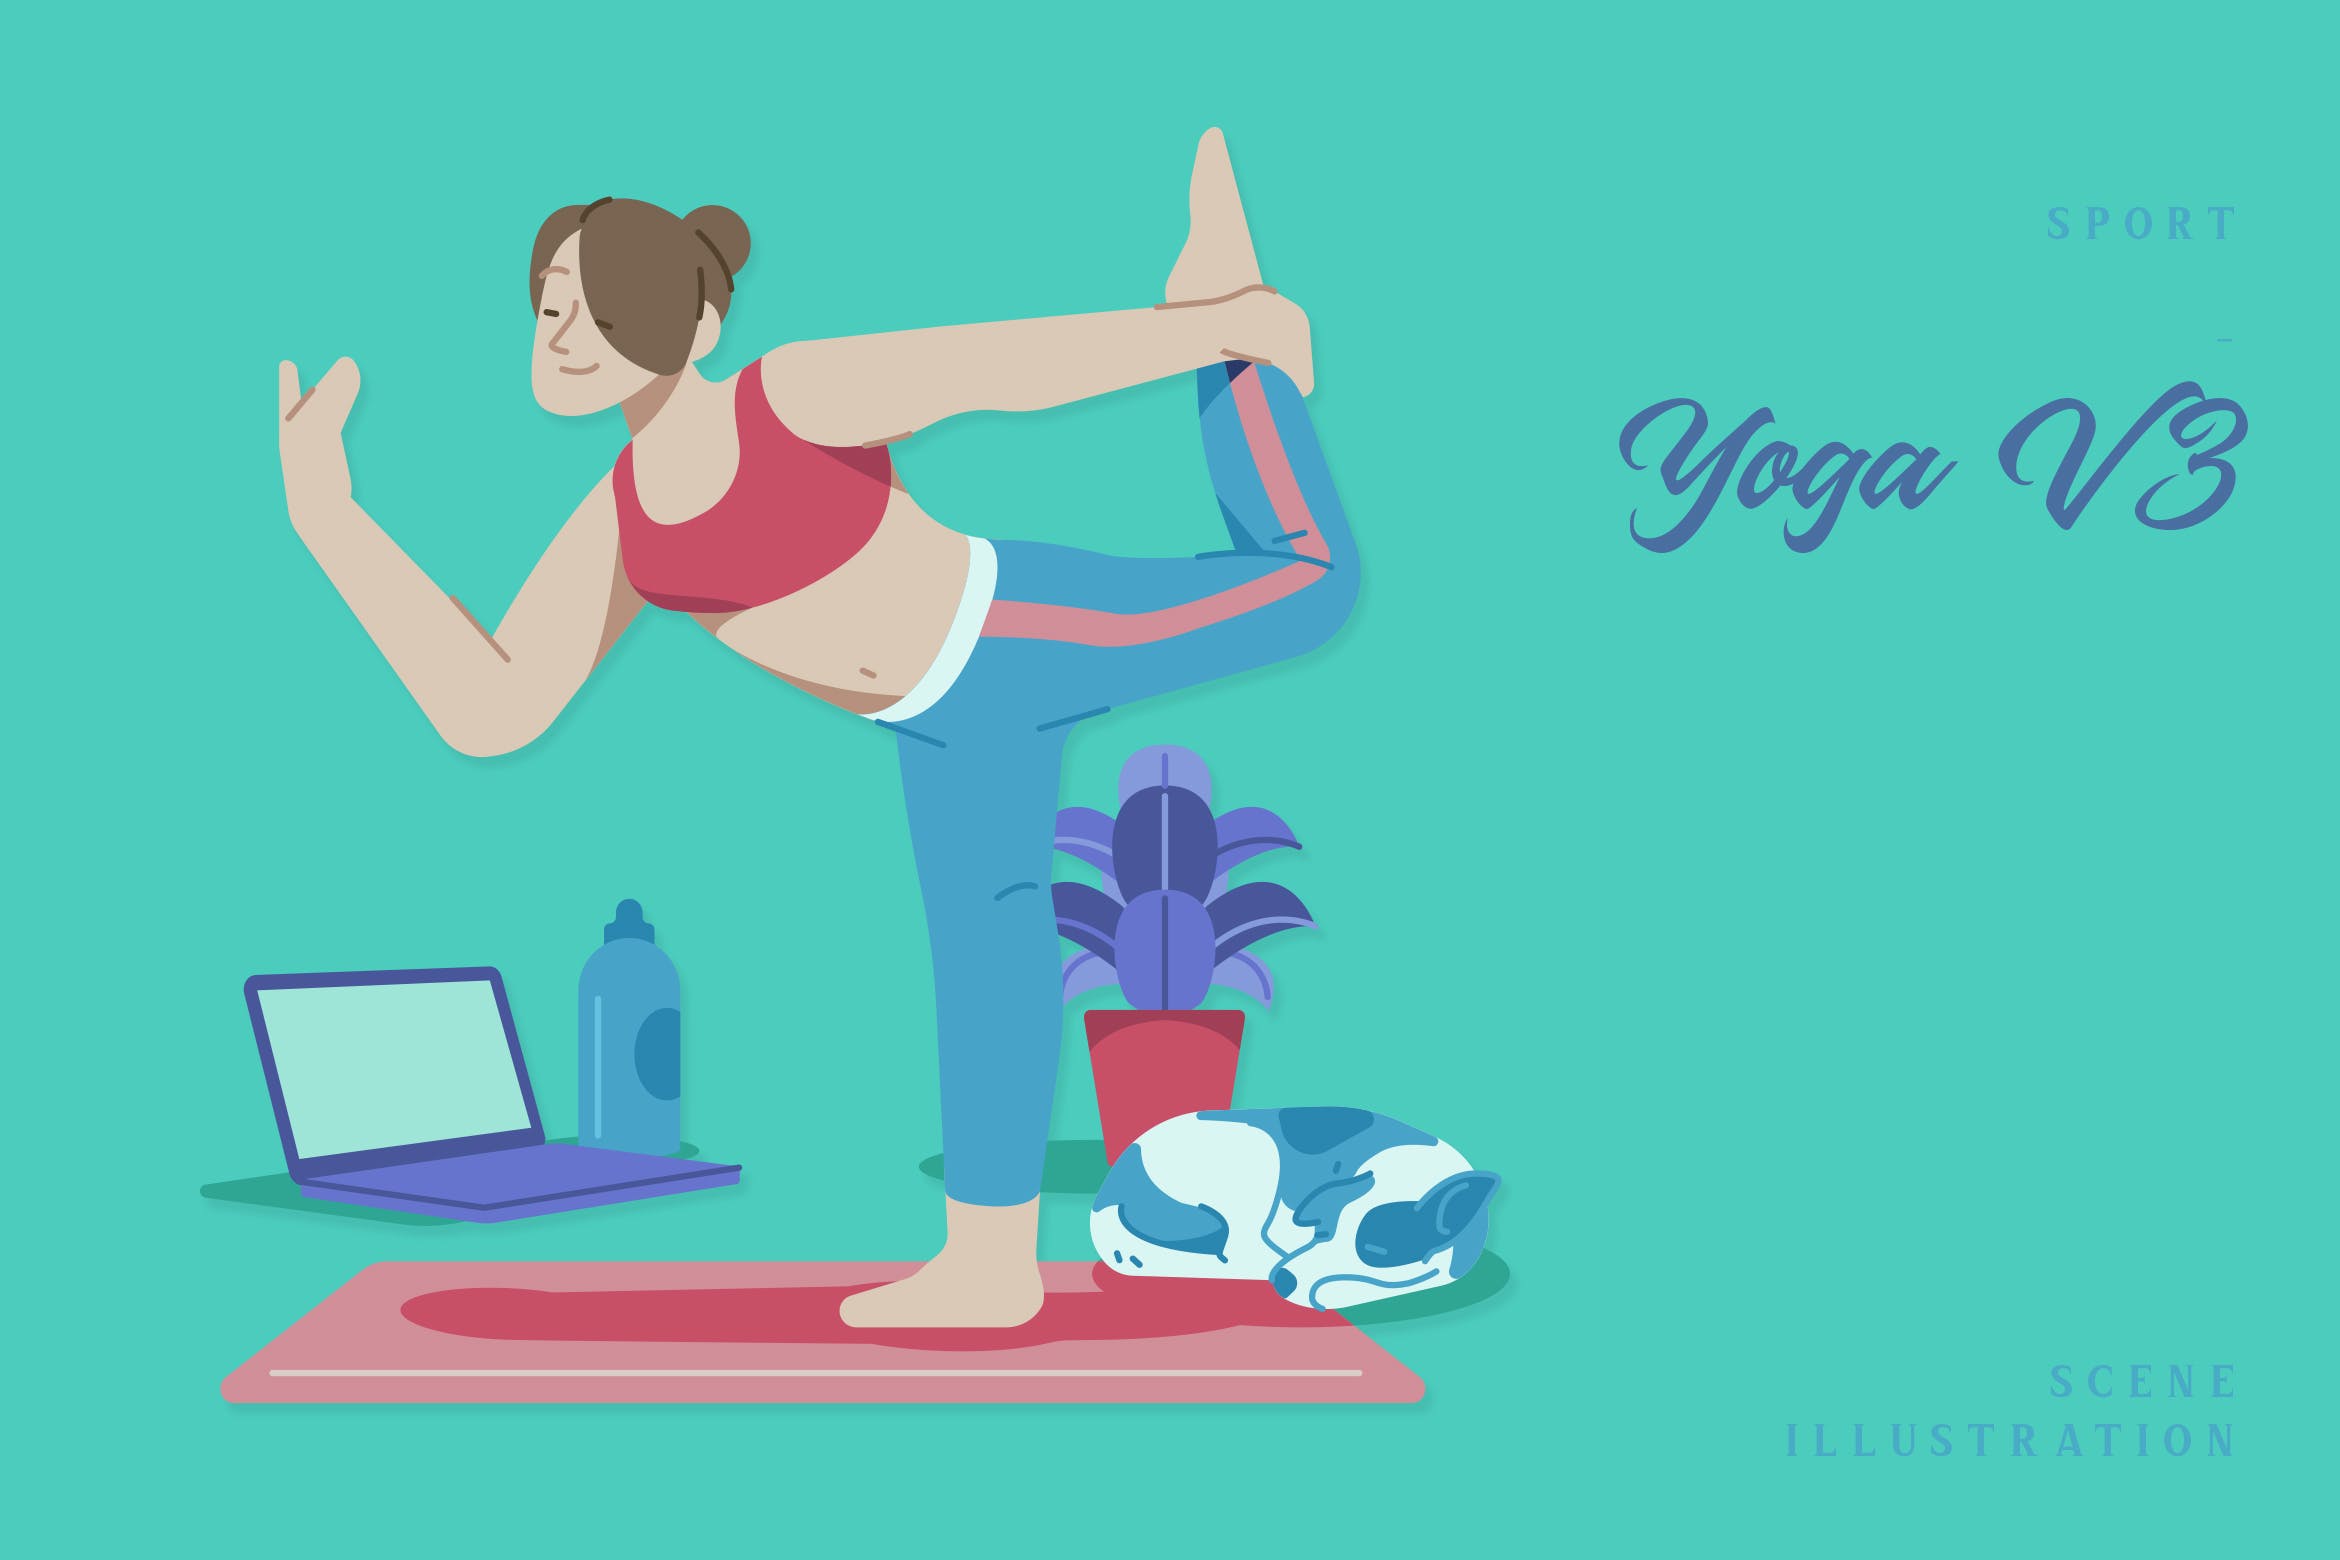 瑜伽运动场景插画v3 Sport – Yoga V3 Scene Illustration-1